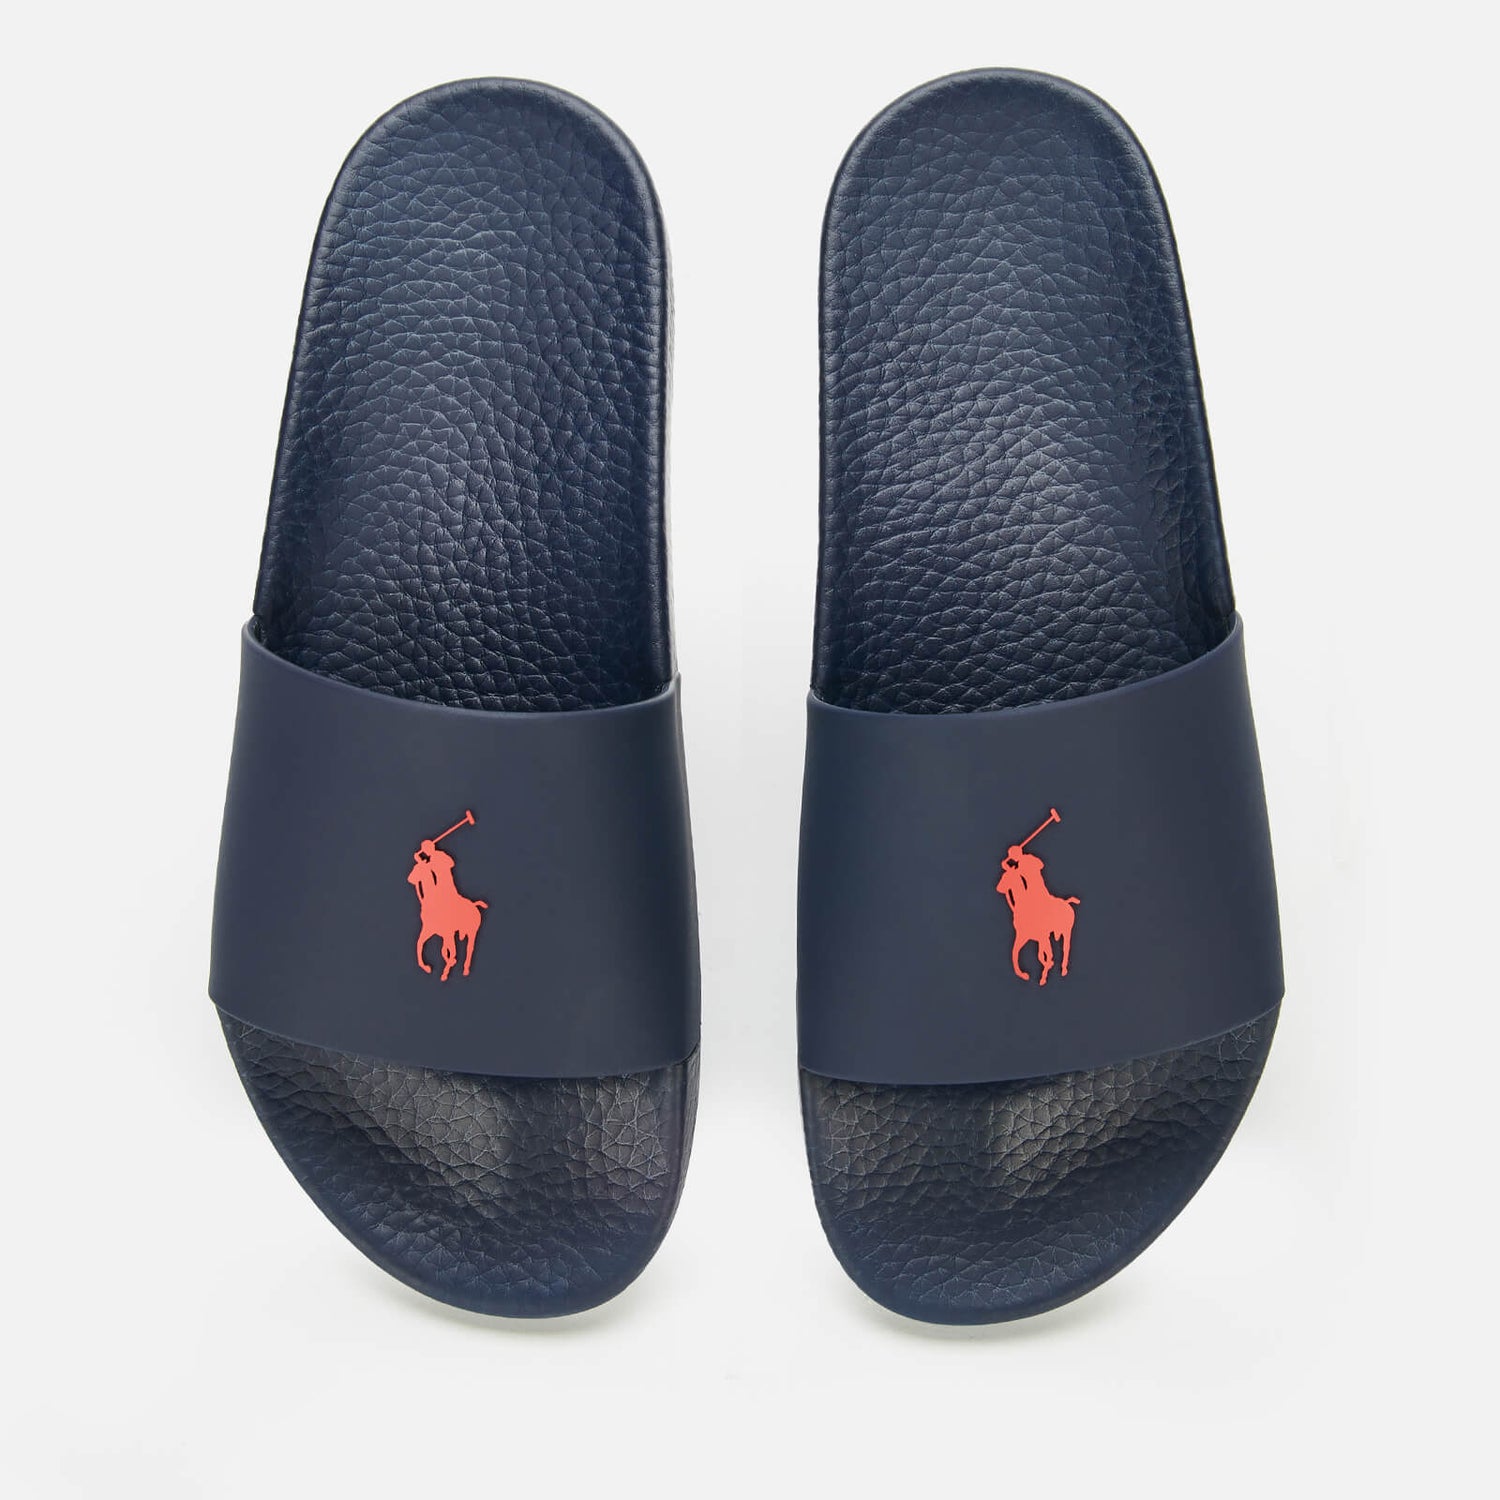 Polo Ralph Lauren Men's Slide Sandals - Navy/Red PP - UK 7